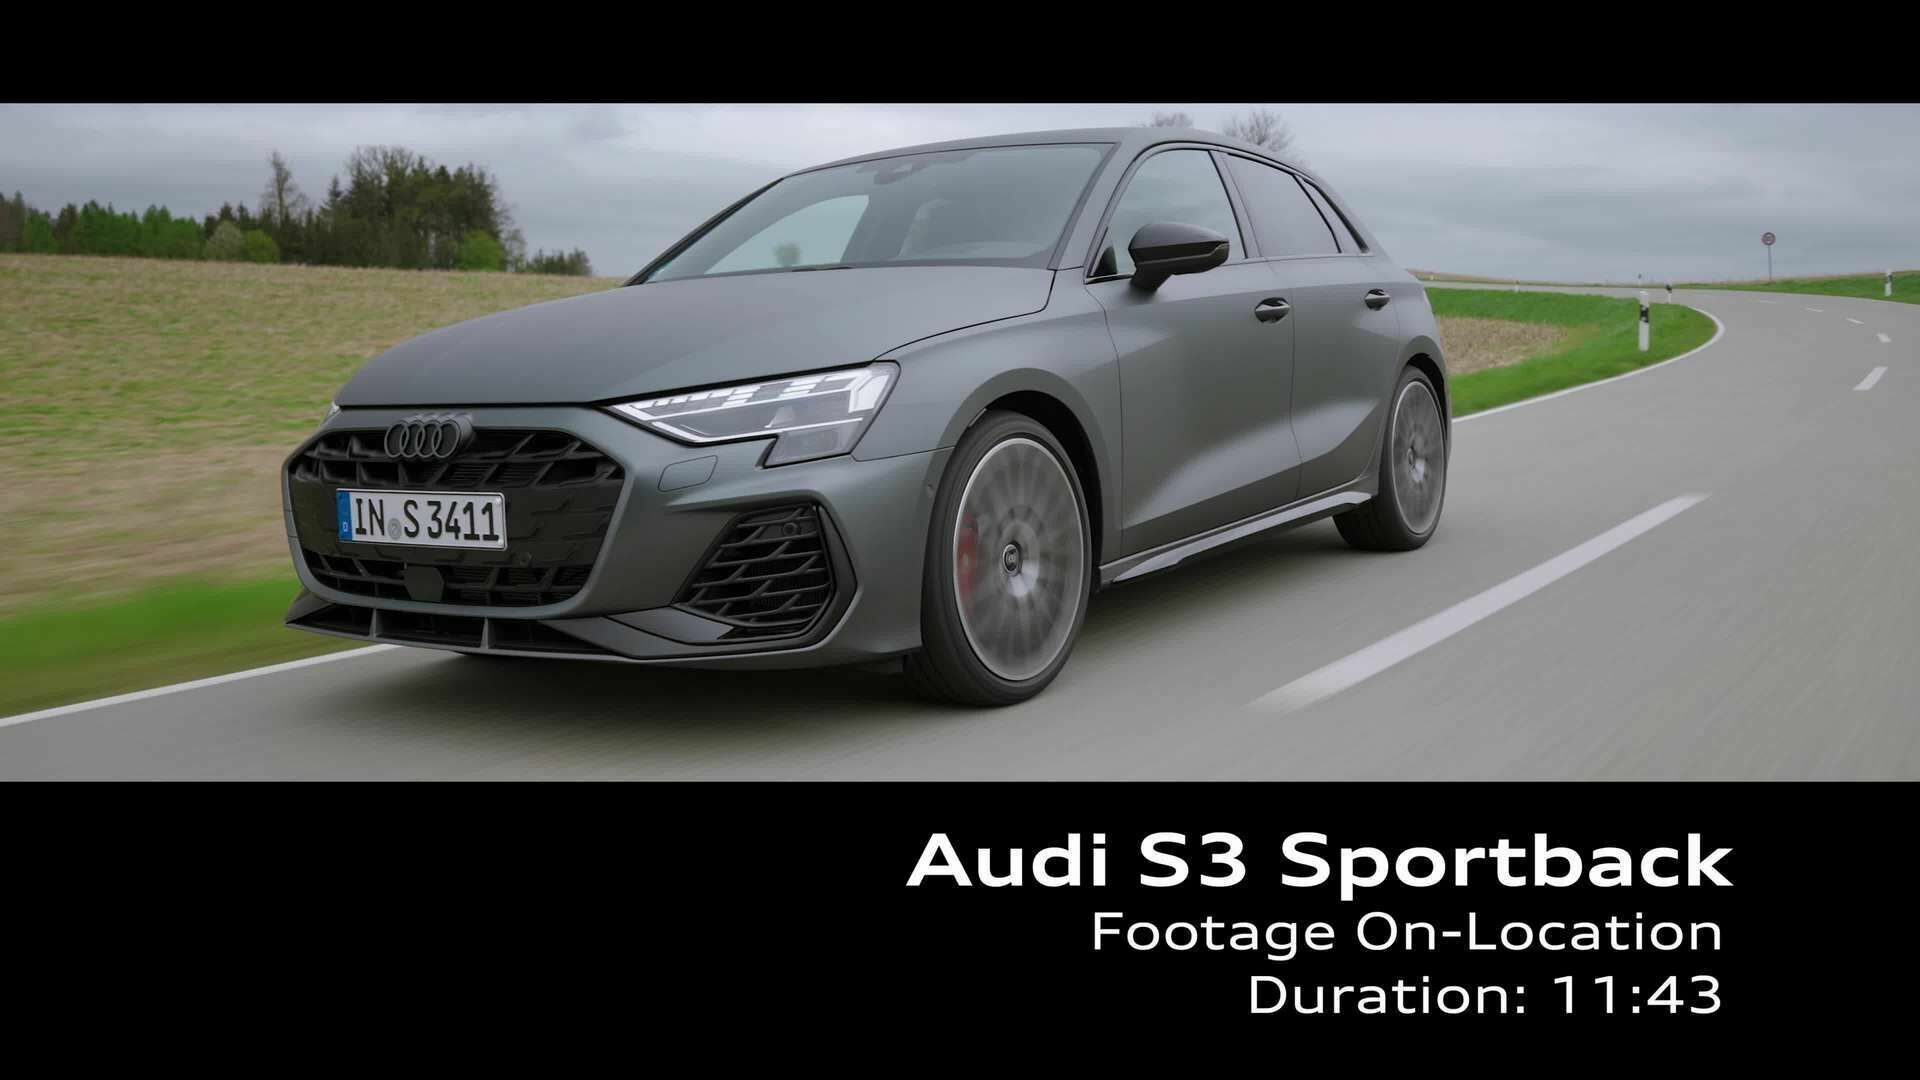 Audi S3 Sportback - Footage (On-Location)